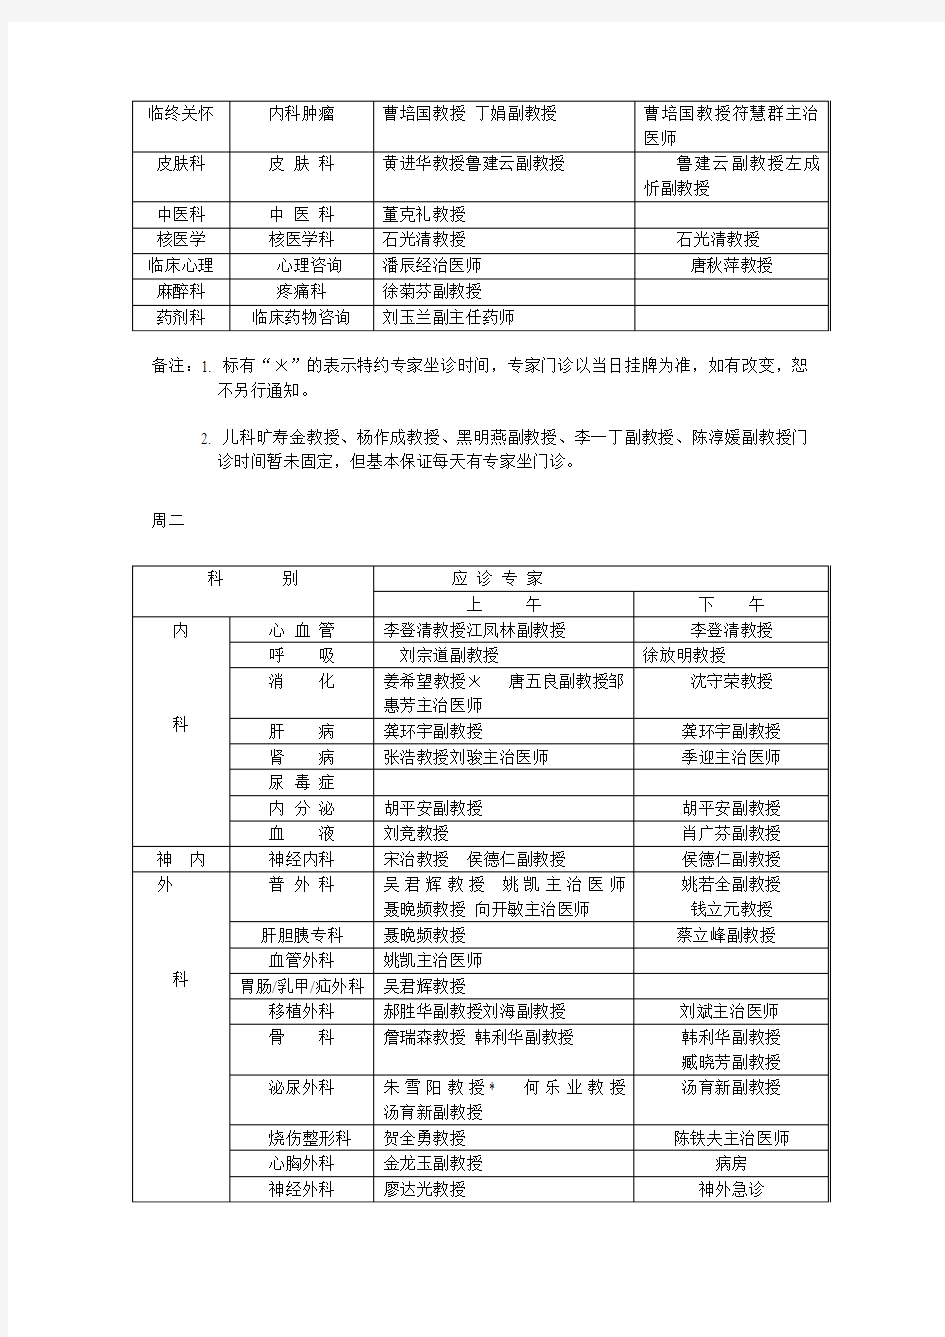 专科、专病时间表 - 中南大学湘雅三医院